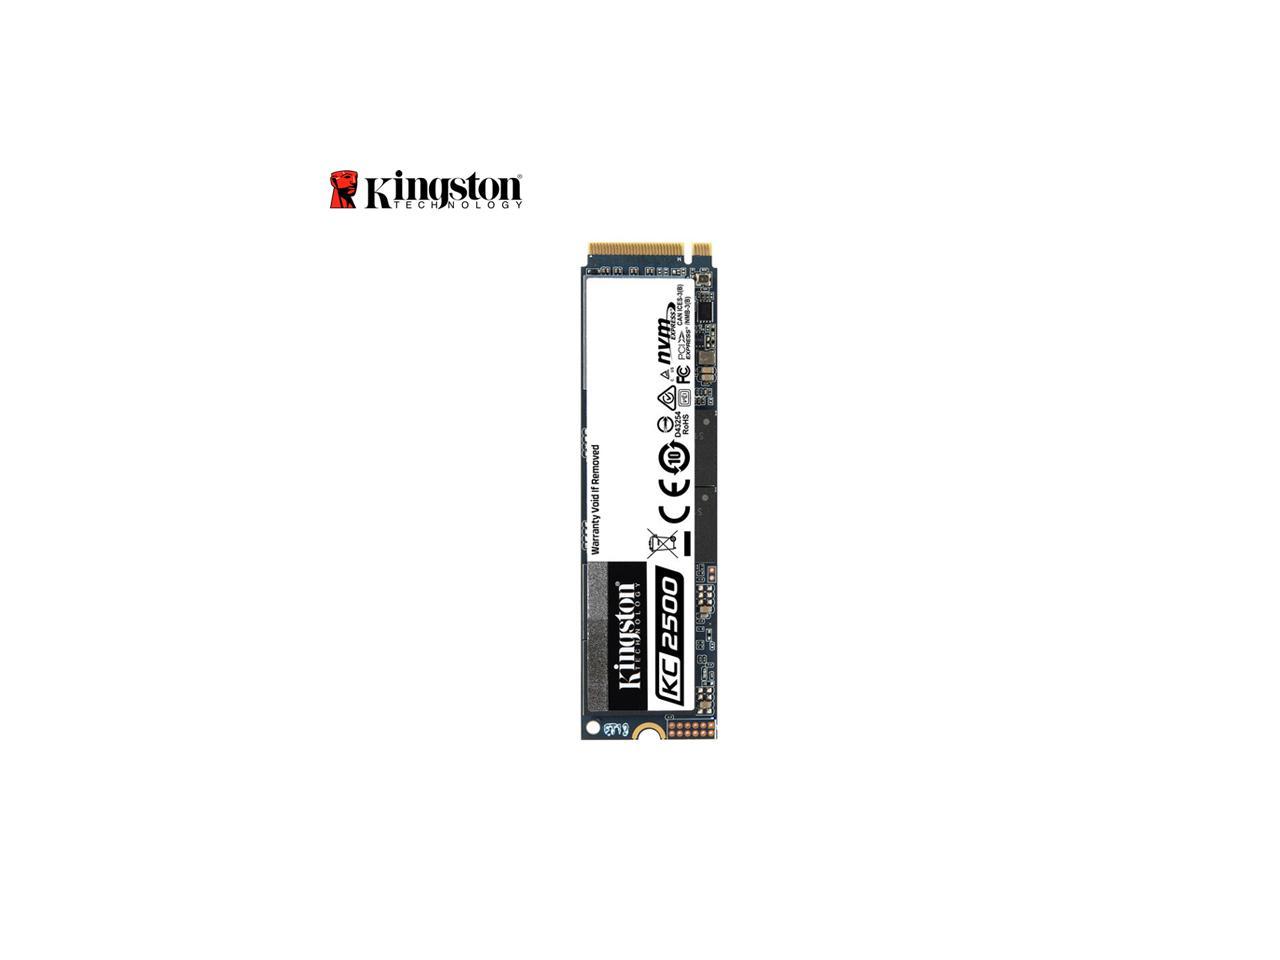 Kingston KC2500 M.2 2280 500GB NVMe PCIe Gen 3.0 x4 96-layer 3D TLC  Internal Solid State Drive (SSD) SKC2500M8/500G